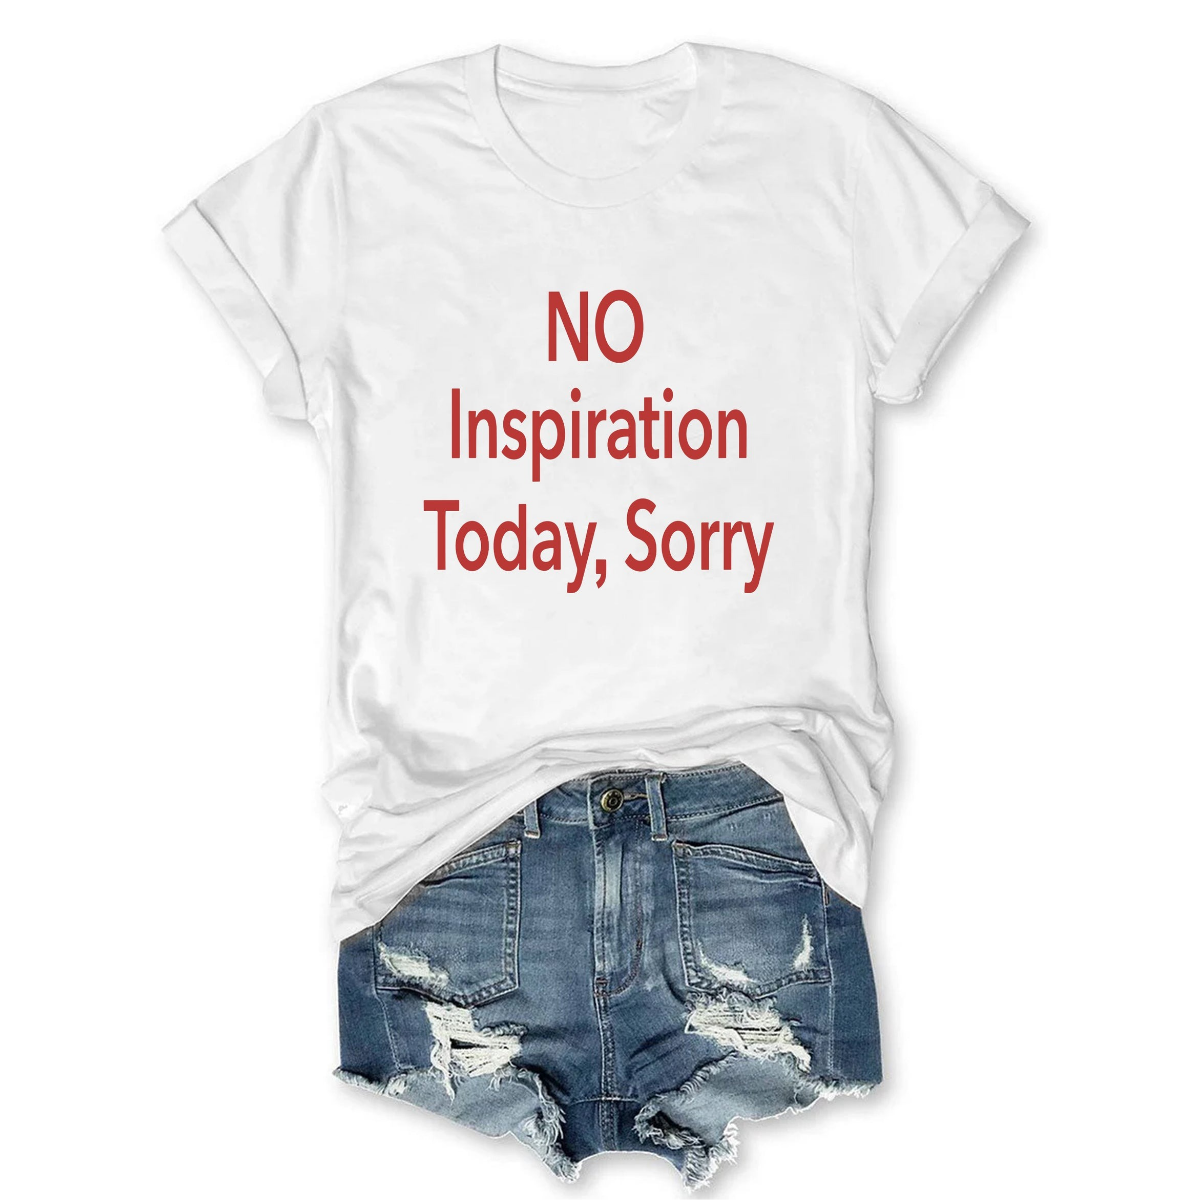 No Inspiration Today I'm Sorry T-shirt